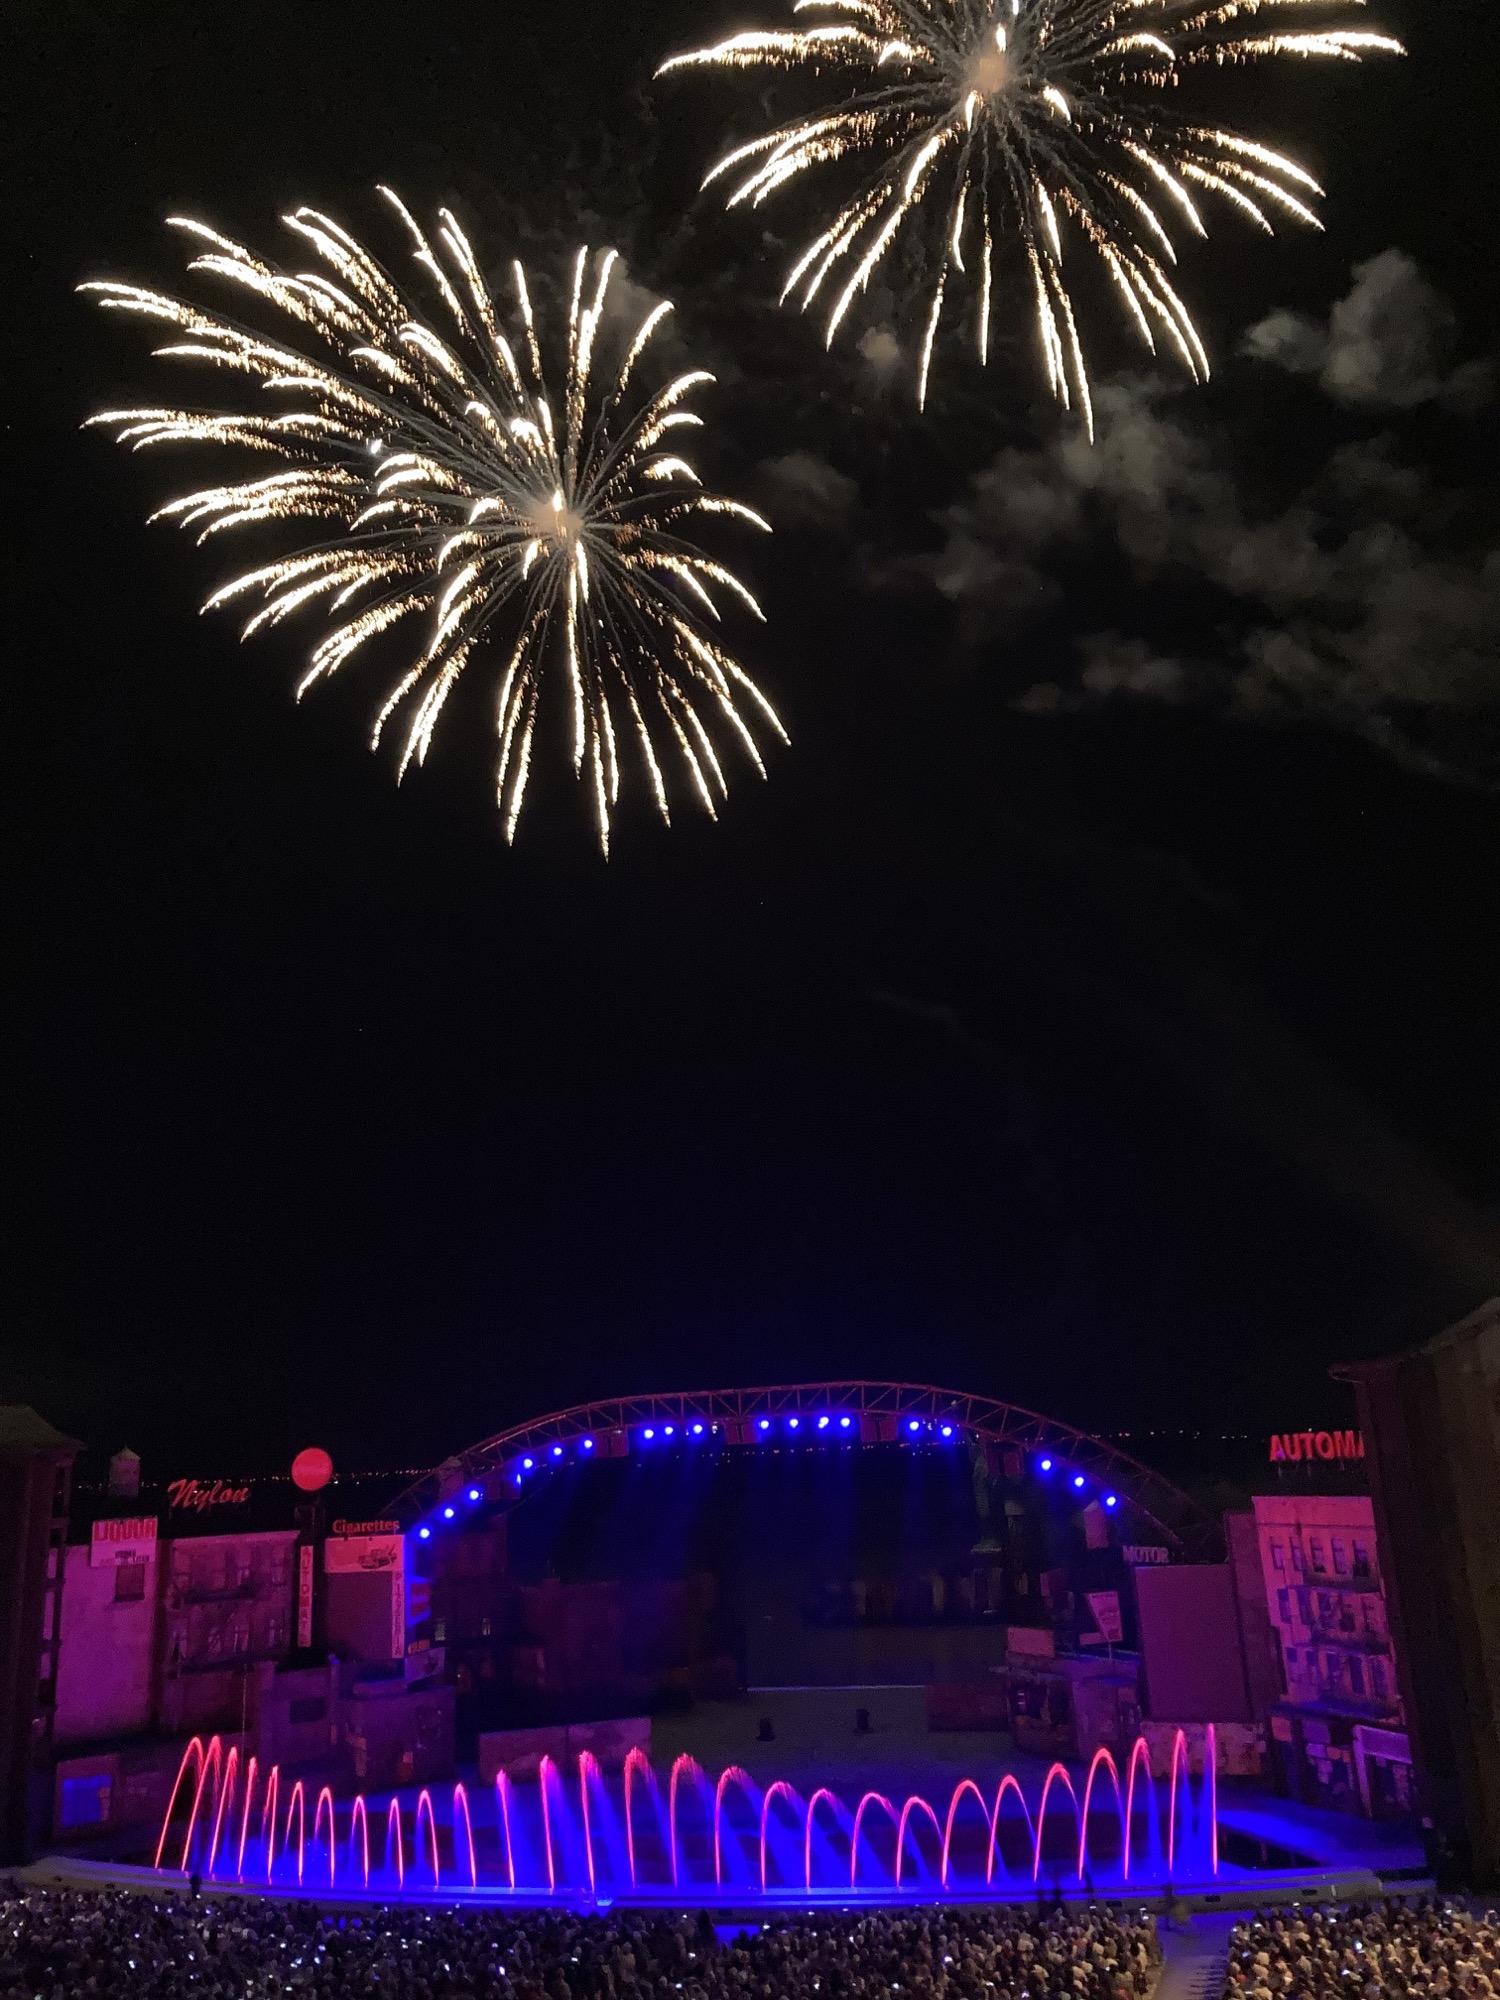 Seebühne Mörbisch mit Dekoration des Musicals „West Side Story“, Wasserspiel vor der Bühne und Feuerwerk im Hintergrund am Himmel